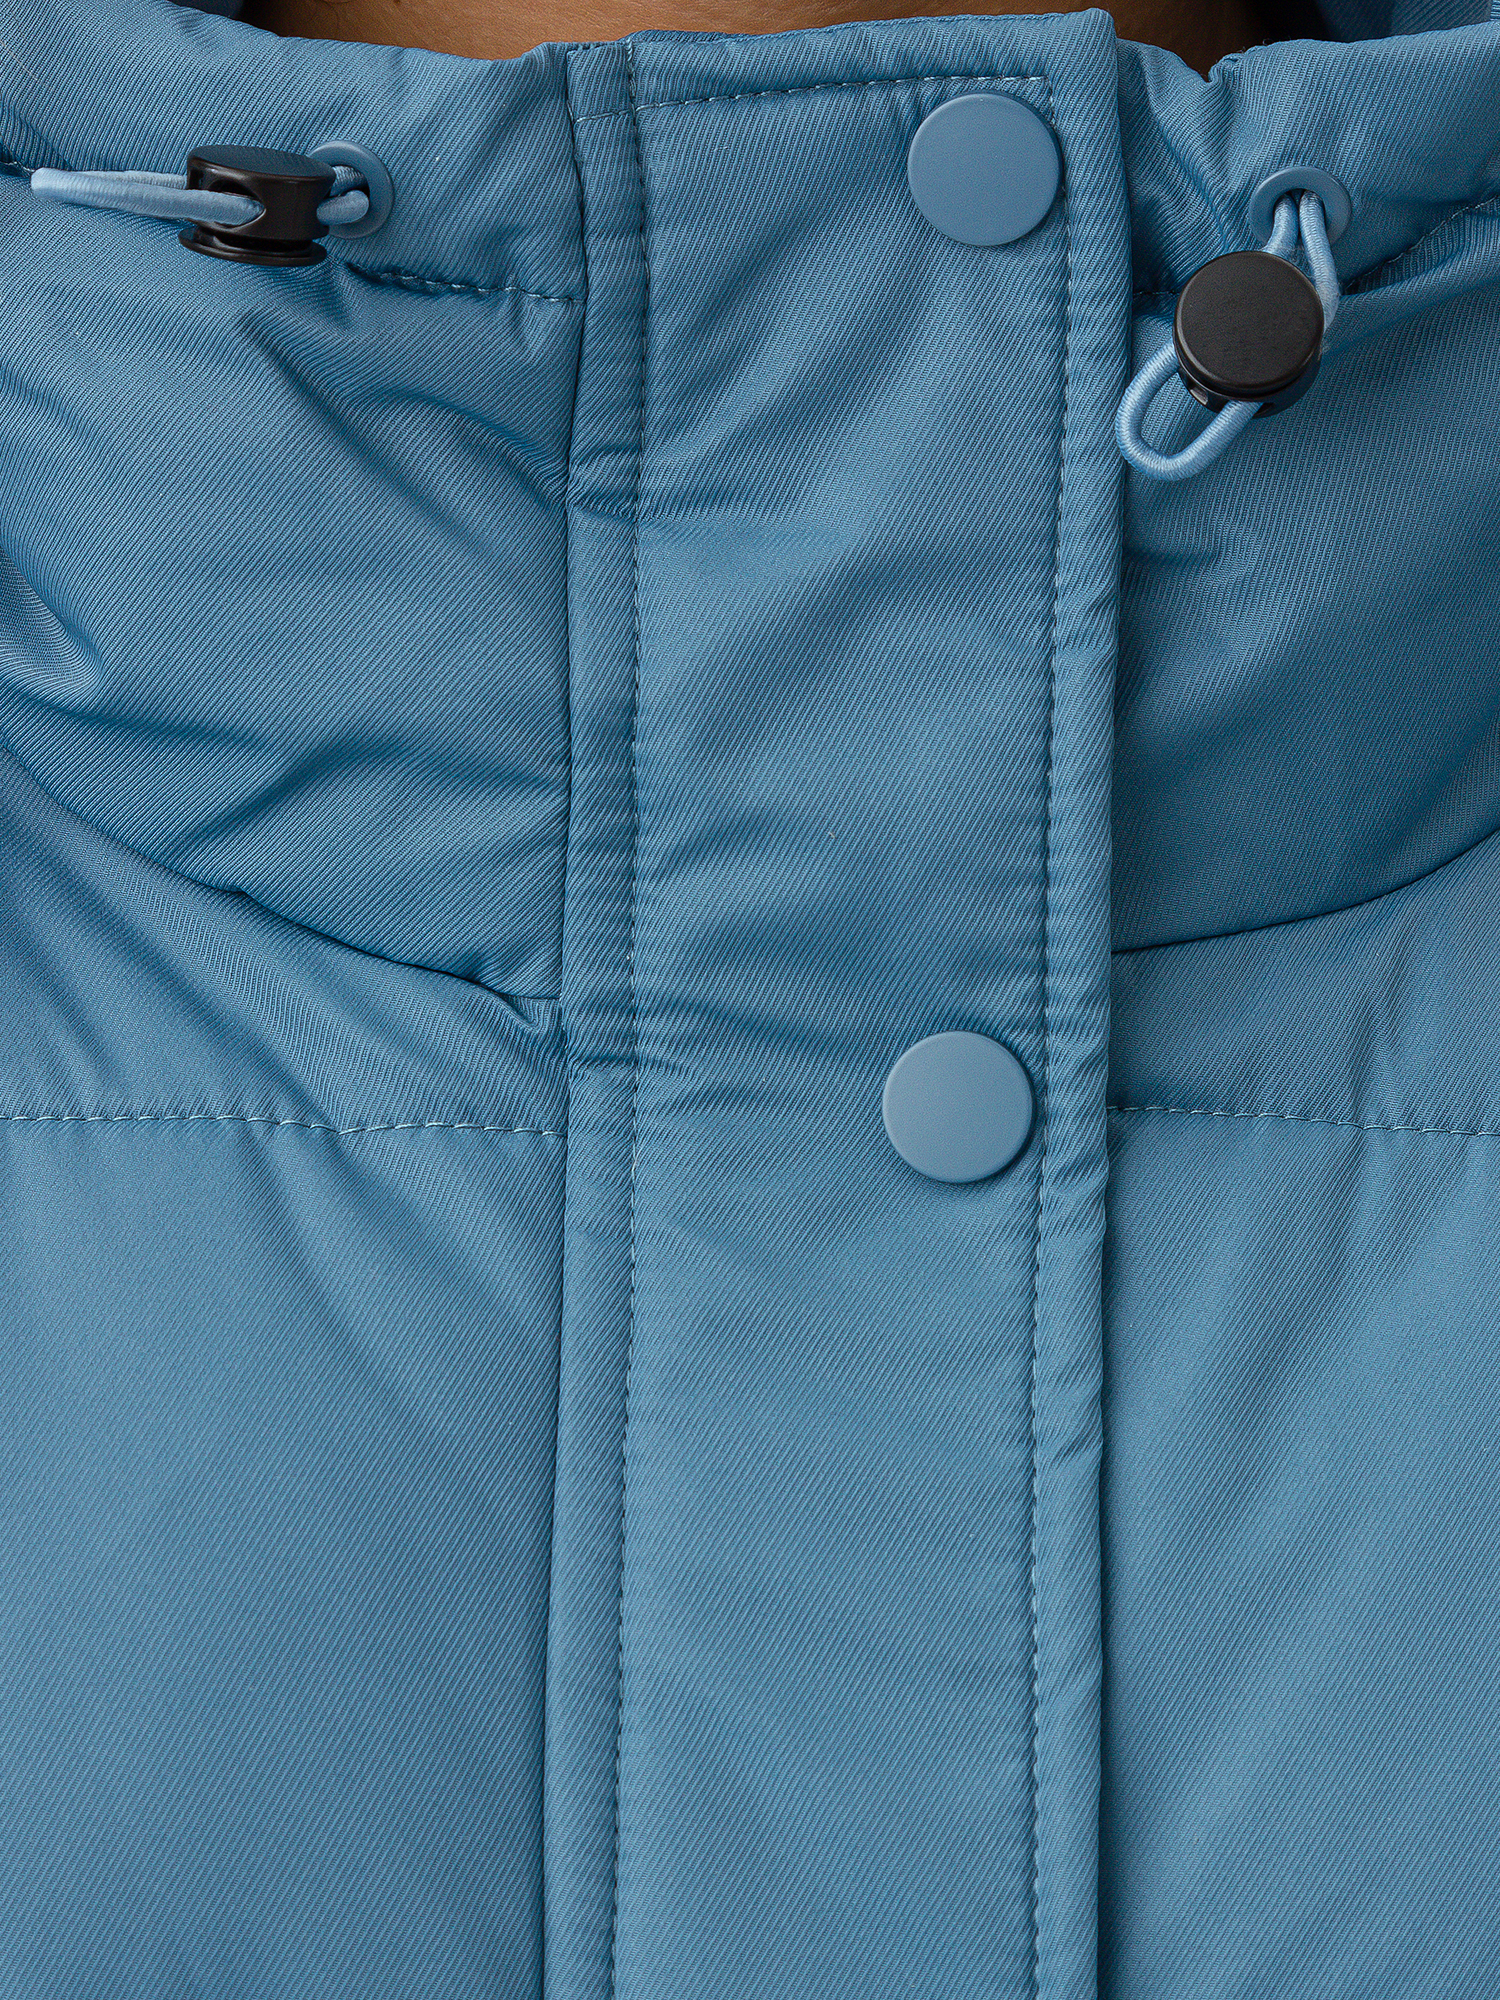 Куртка женская голубая 222OZWC41031800, размер XL, цвет голубой - фото 4